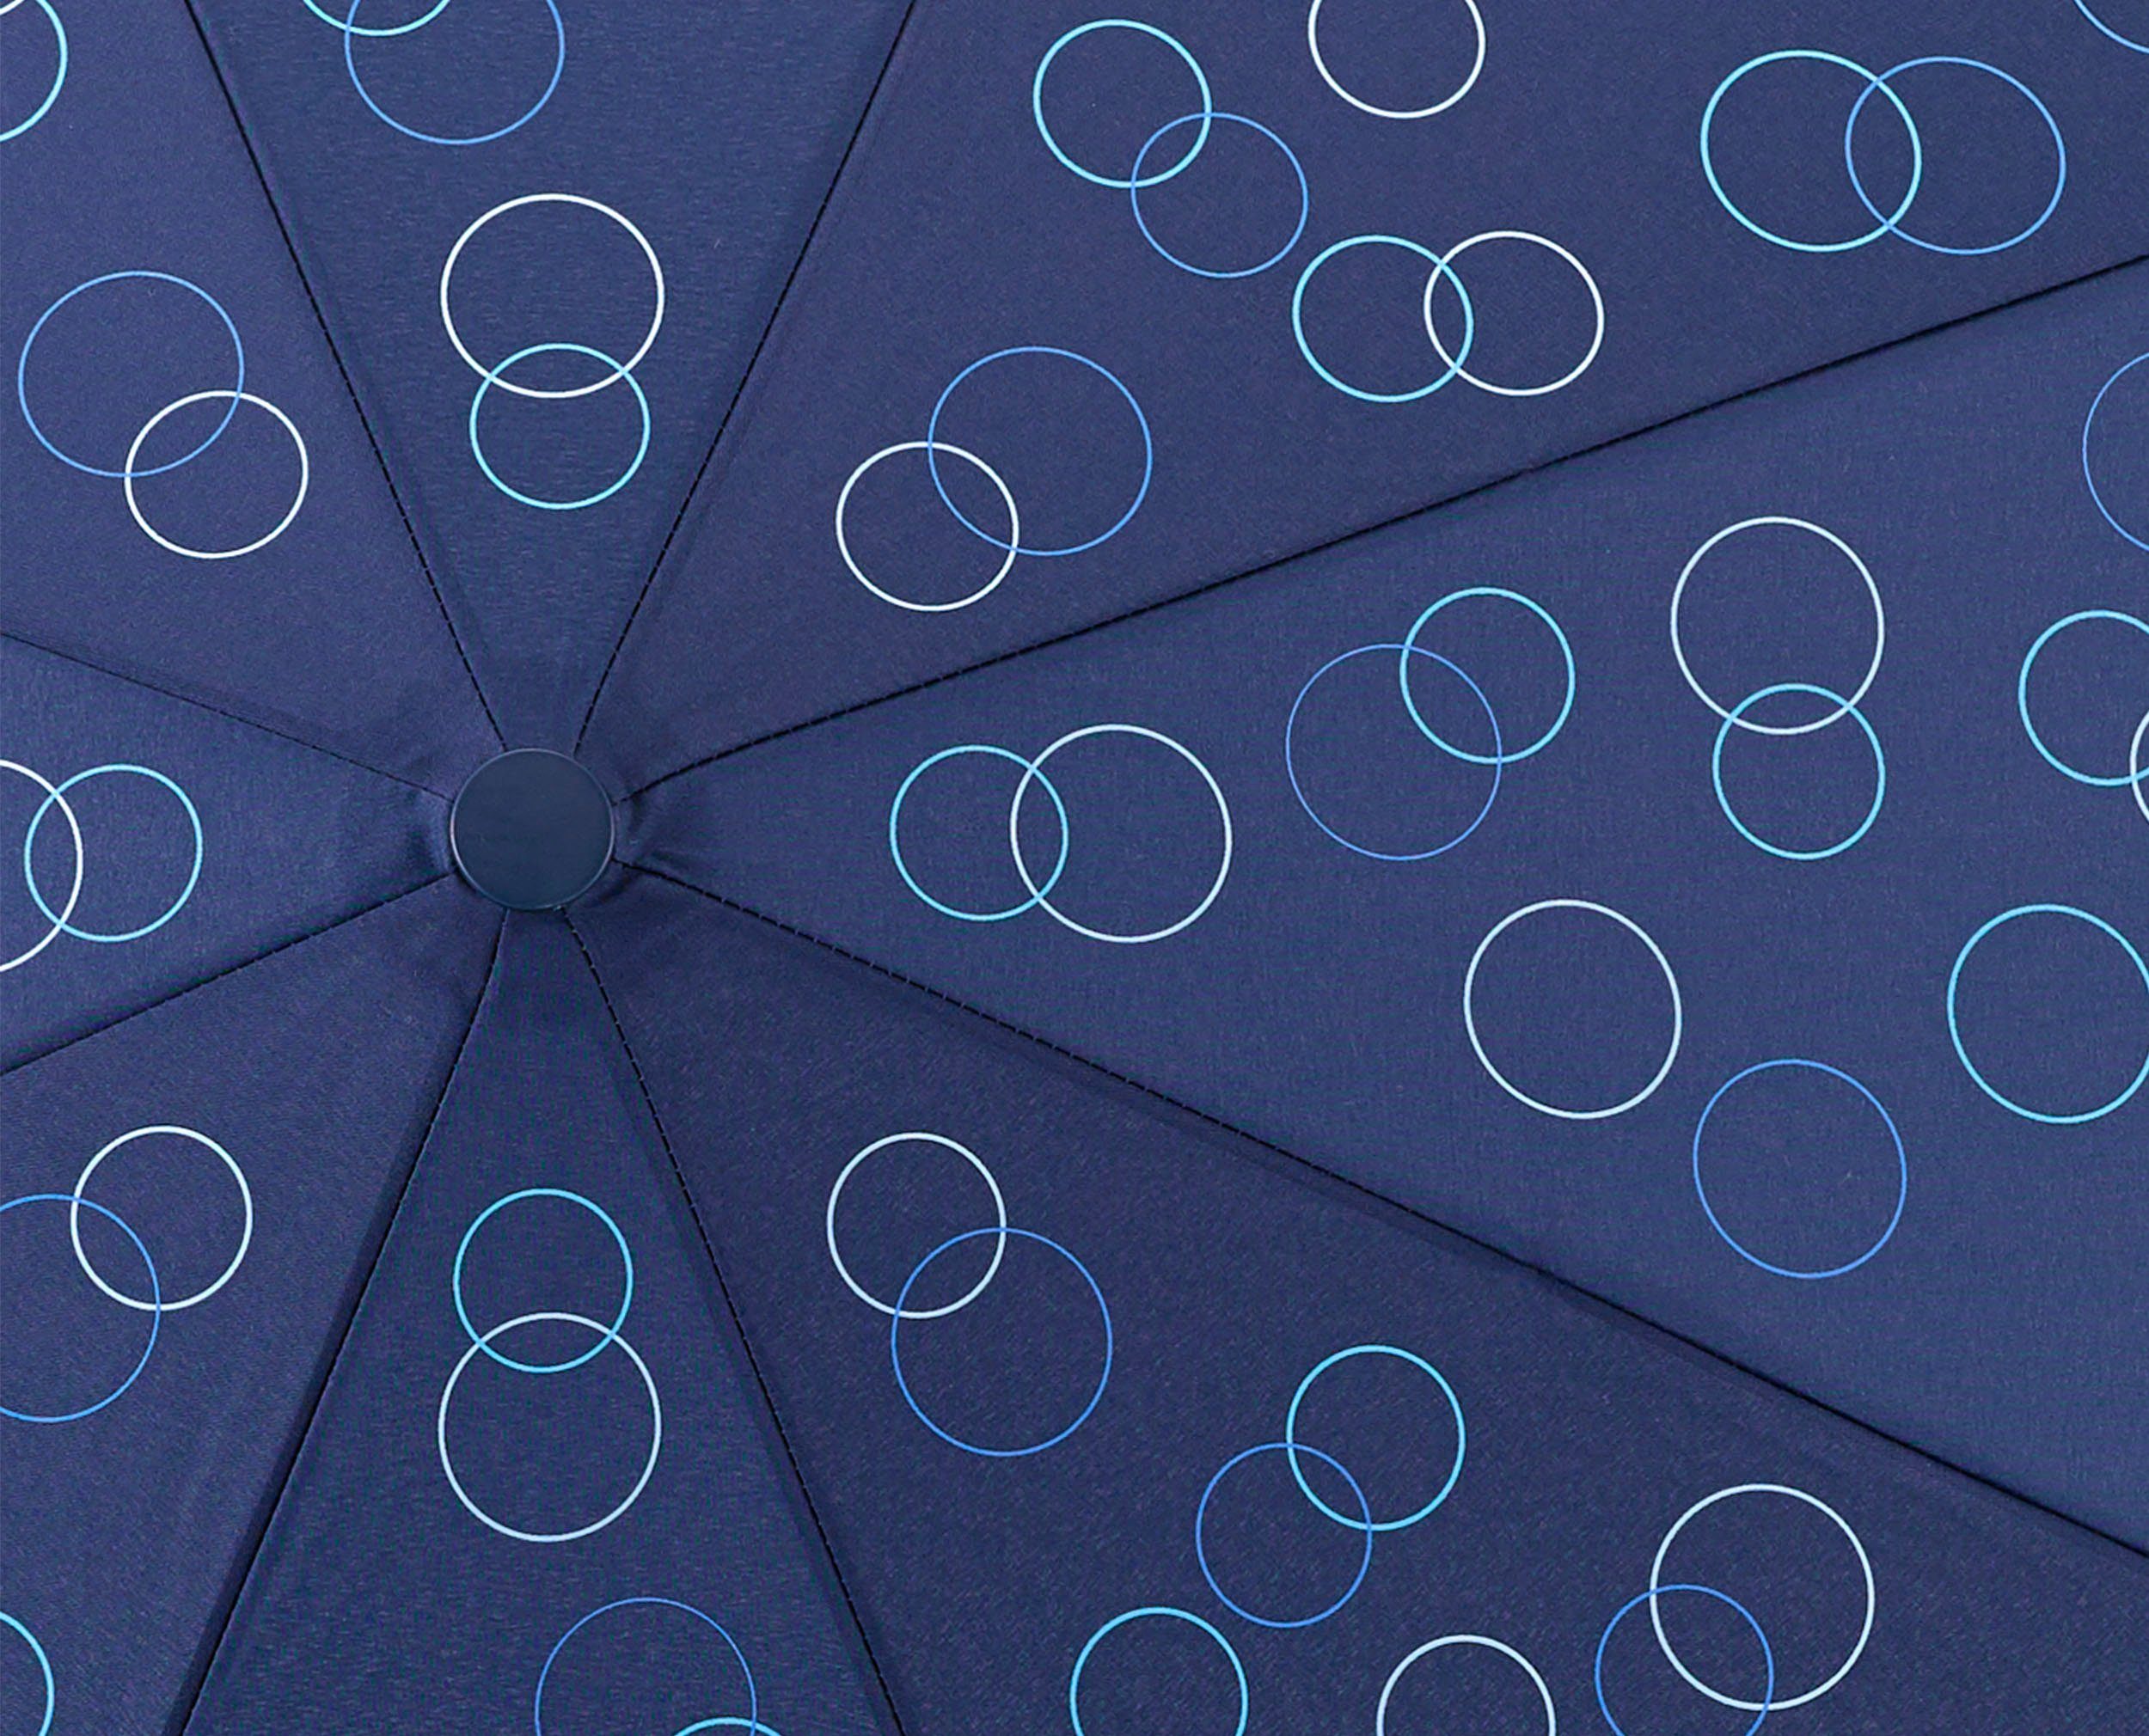 Kreise marine, Taschenregenschirm EuroSCHIRM® blau Umwelt-Taschenschirm,